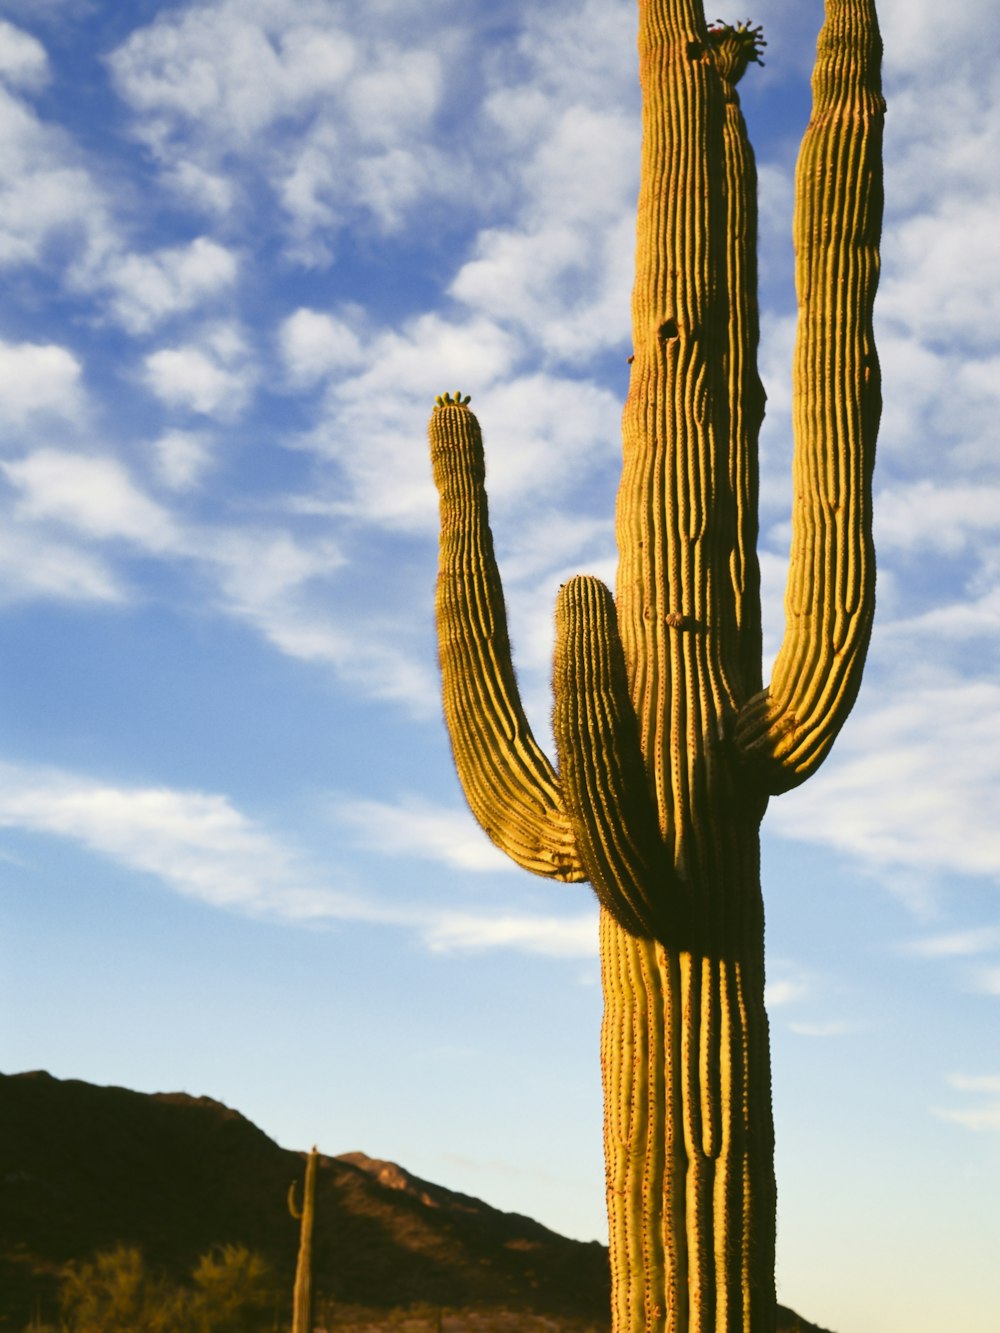 Brauner Kaktus auf grünem Rasen tagsüber